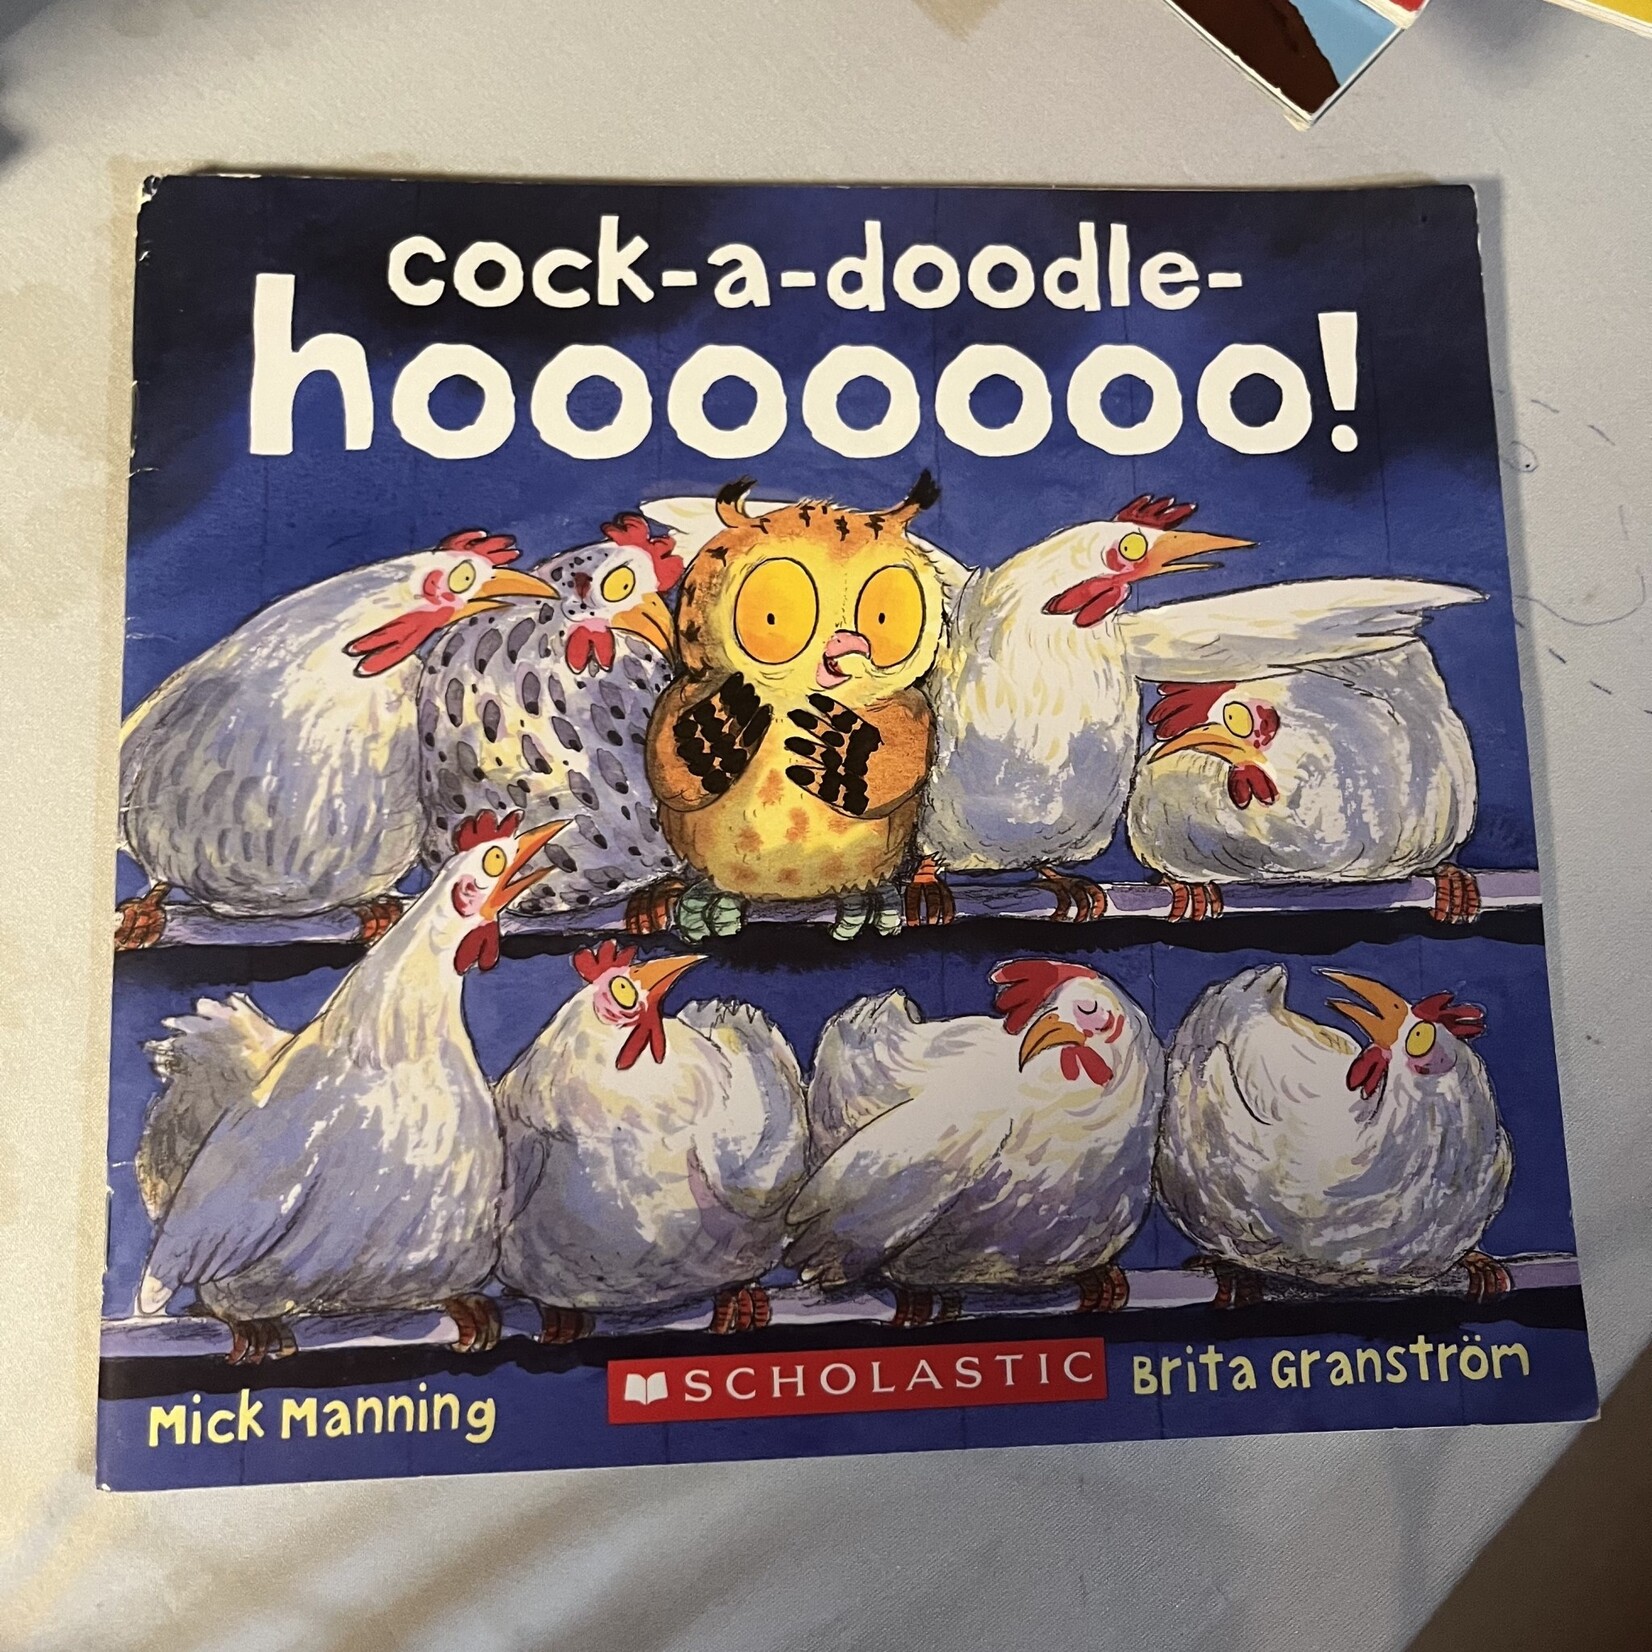 Cock-a-doodle-hoooooo!